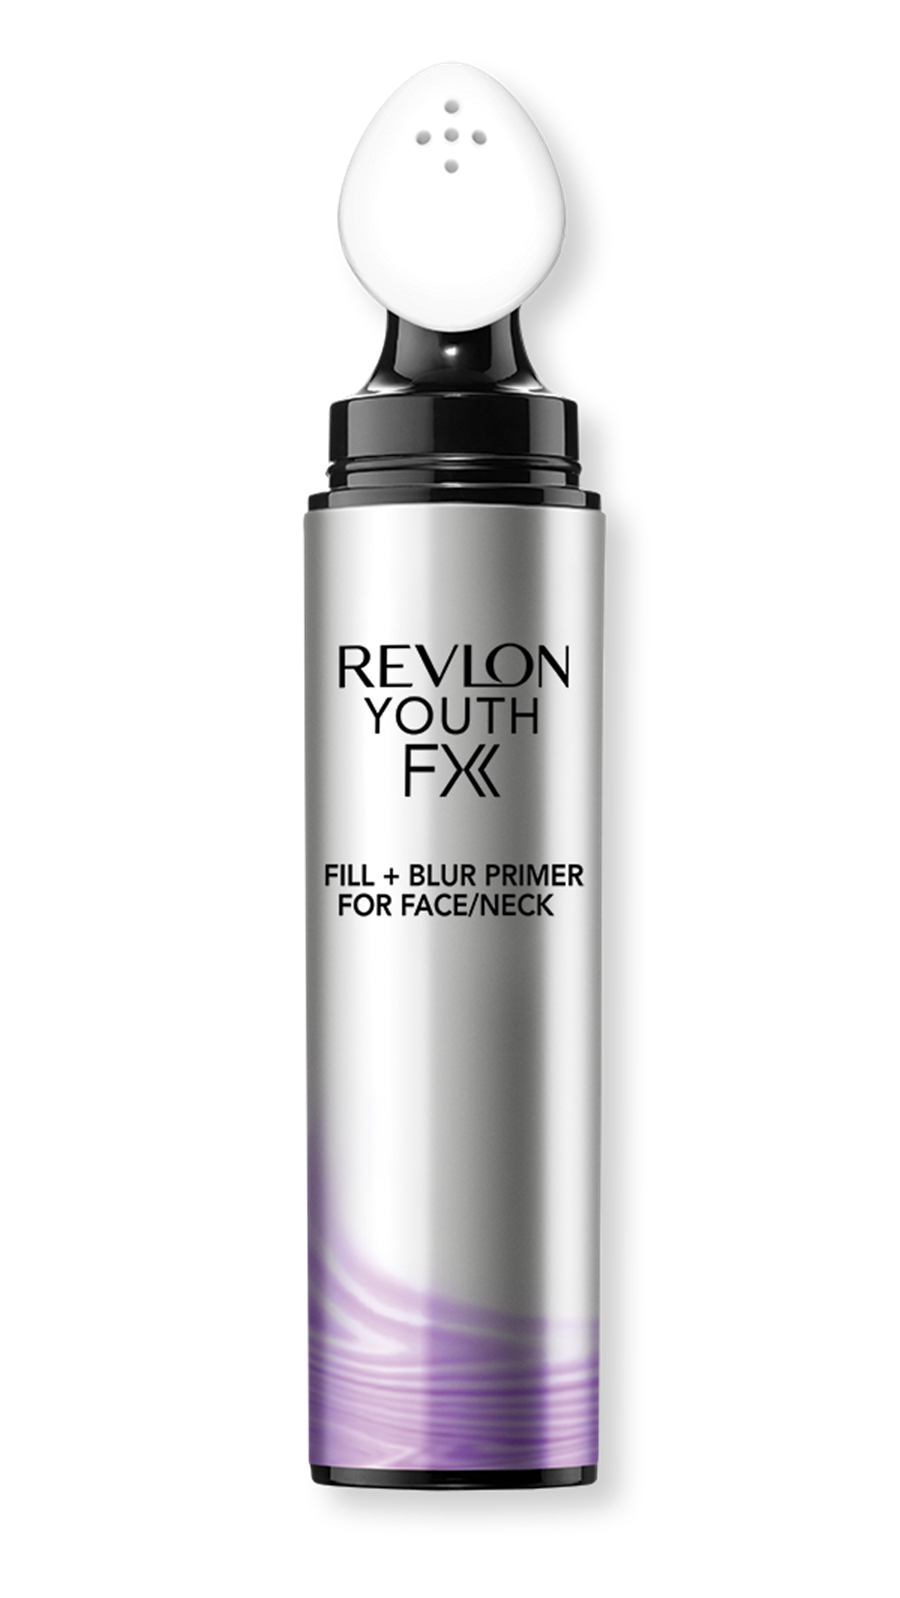 Revlon Youthfx Fill Blur Primer For Face Neck - 